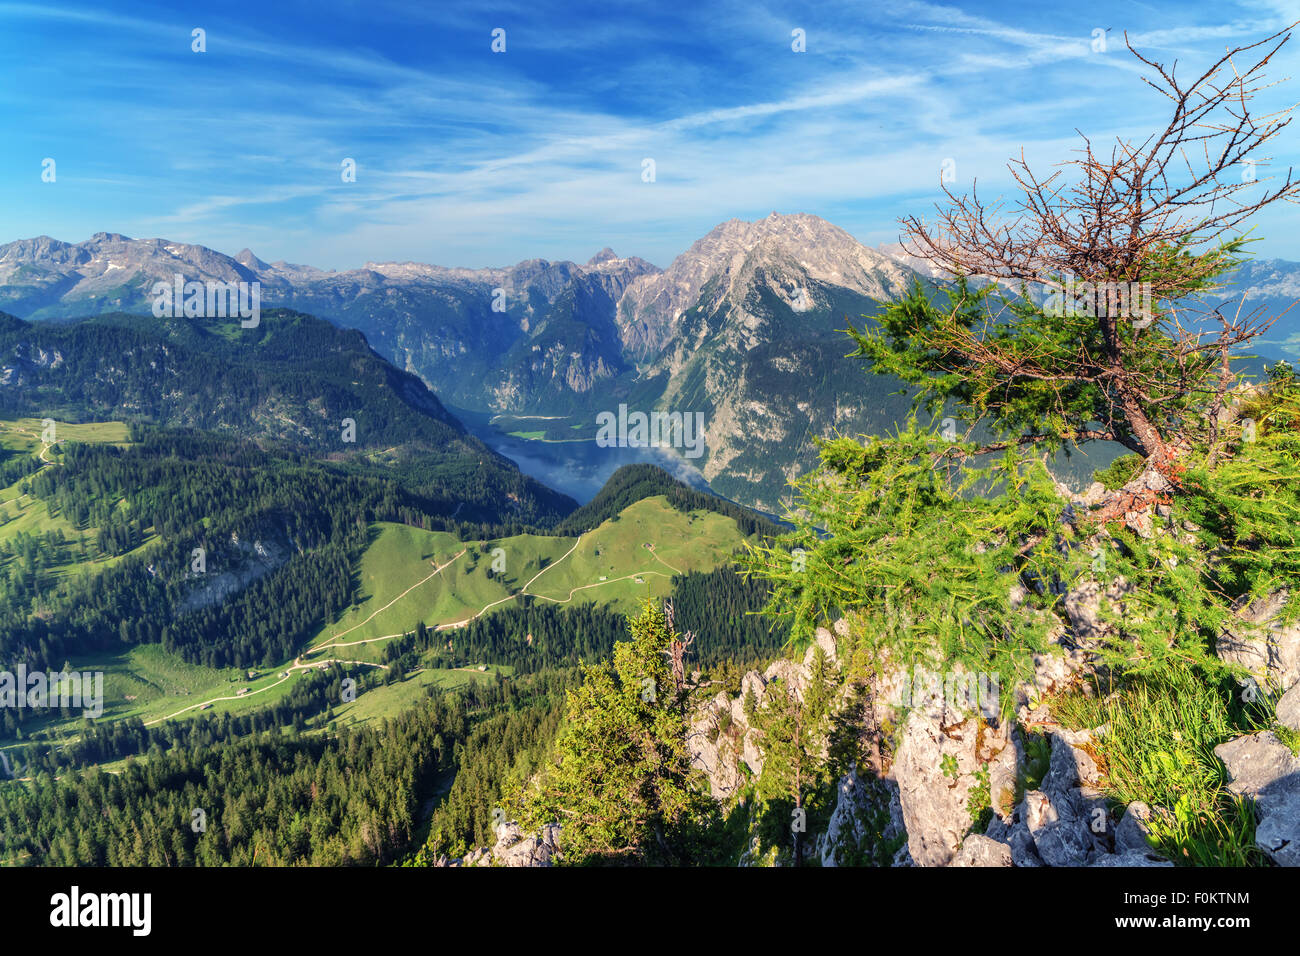 Bella vista dalla parte superiore della funivia al di sopra del lago Konigsee Schneibstein sulla cresta della montagna. Confine di tedesco e Alpi austriache, Foto Stock